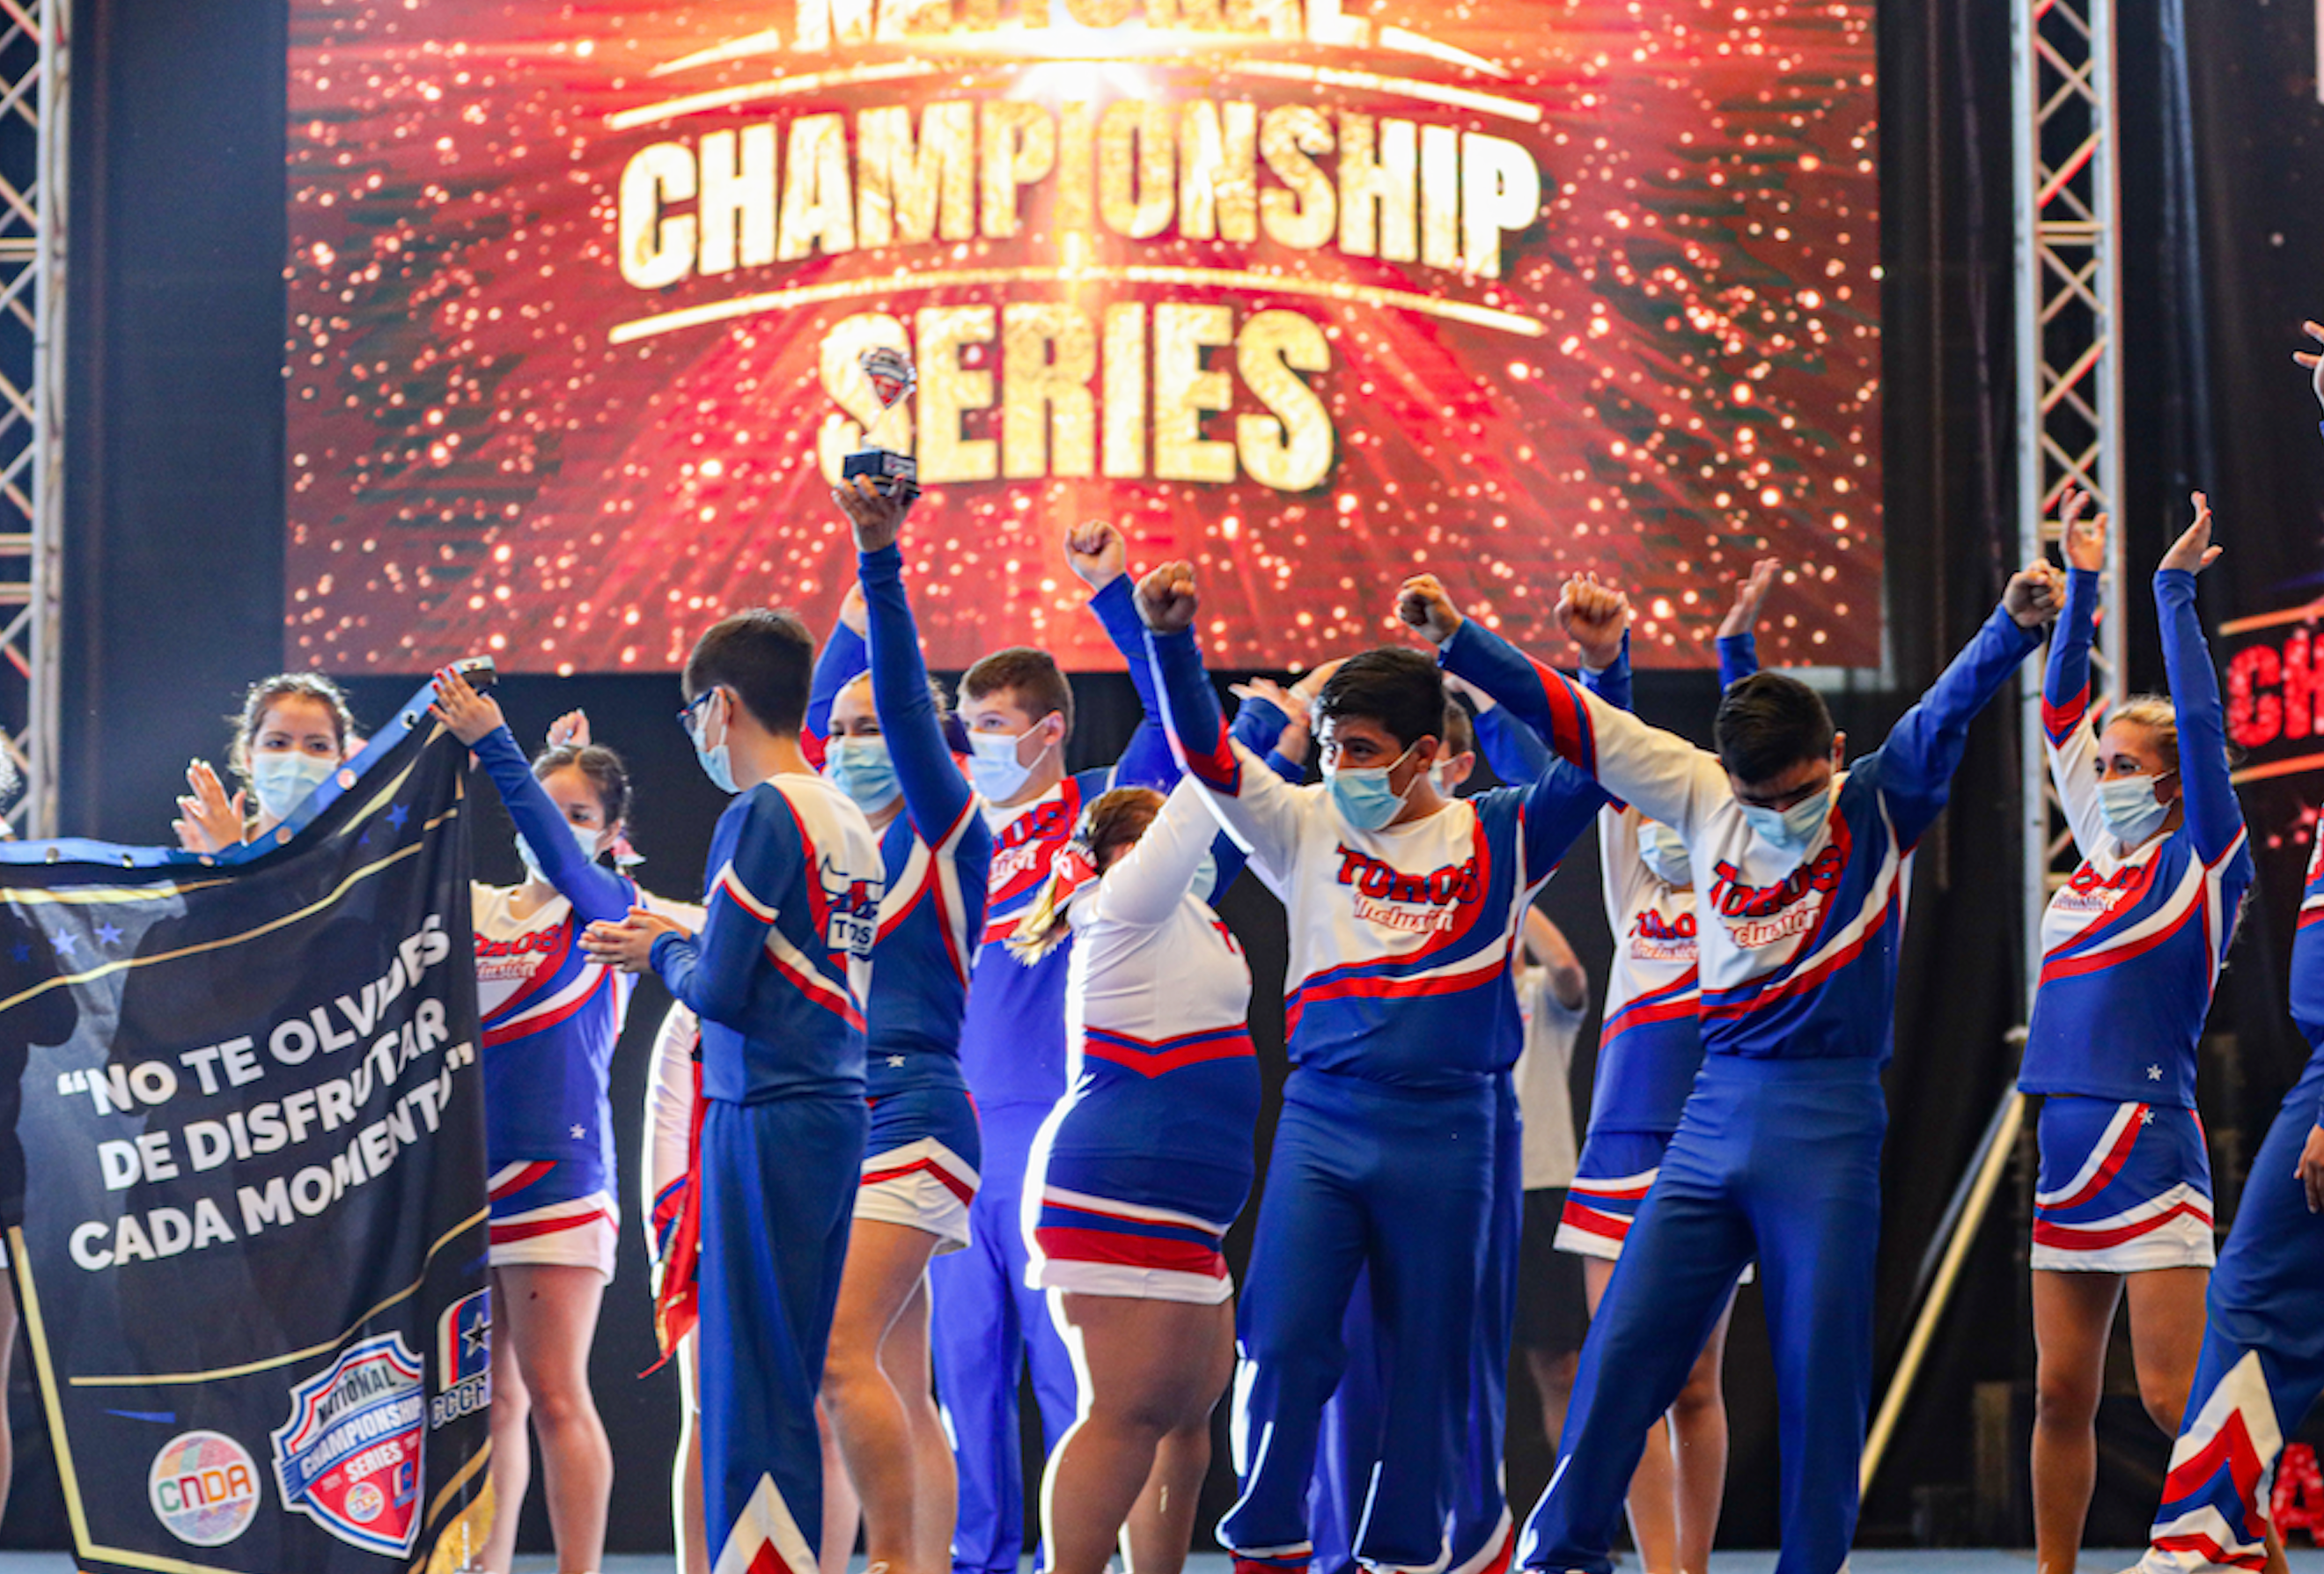 Equipo Toros Inclusión se coronó campeón nacional del National Championship Series de Cheerleaders